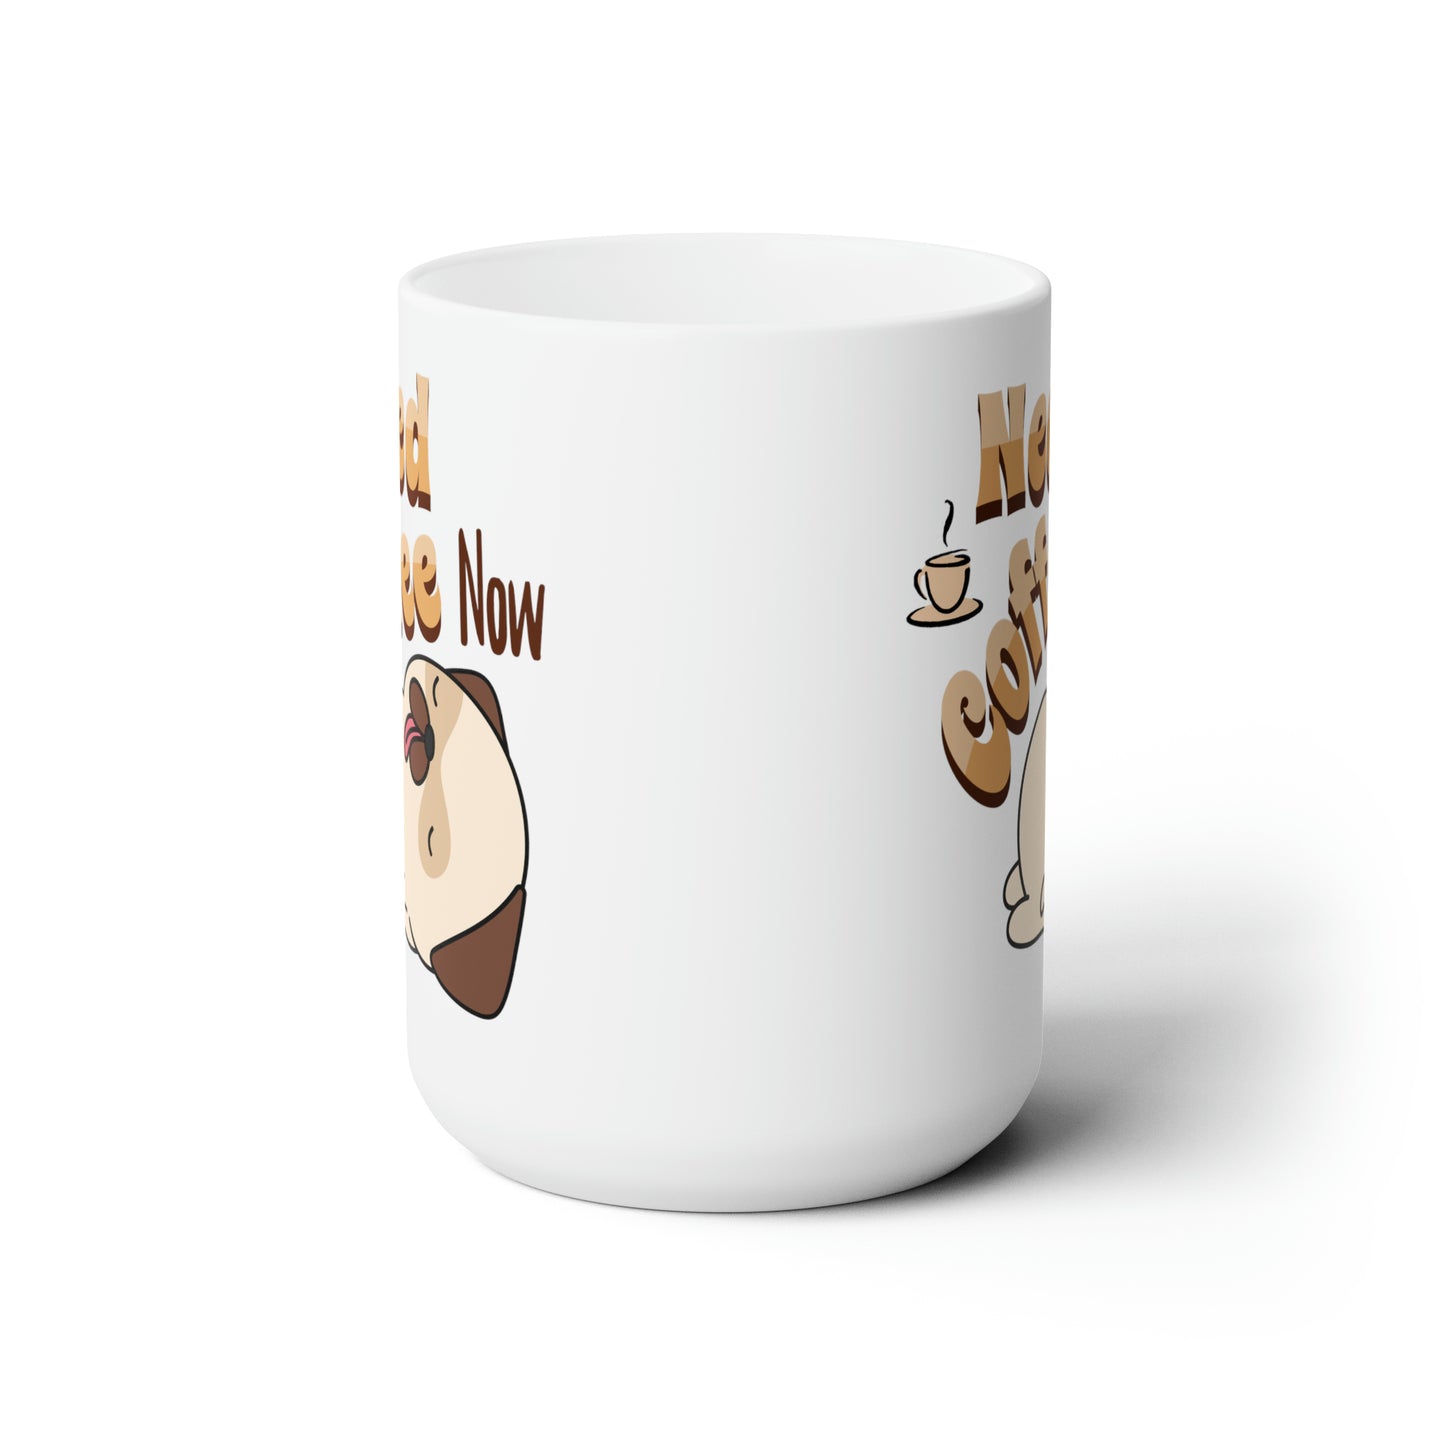 Pug Needs Coffee Now Ceramic Mug 15oz